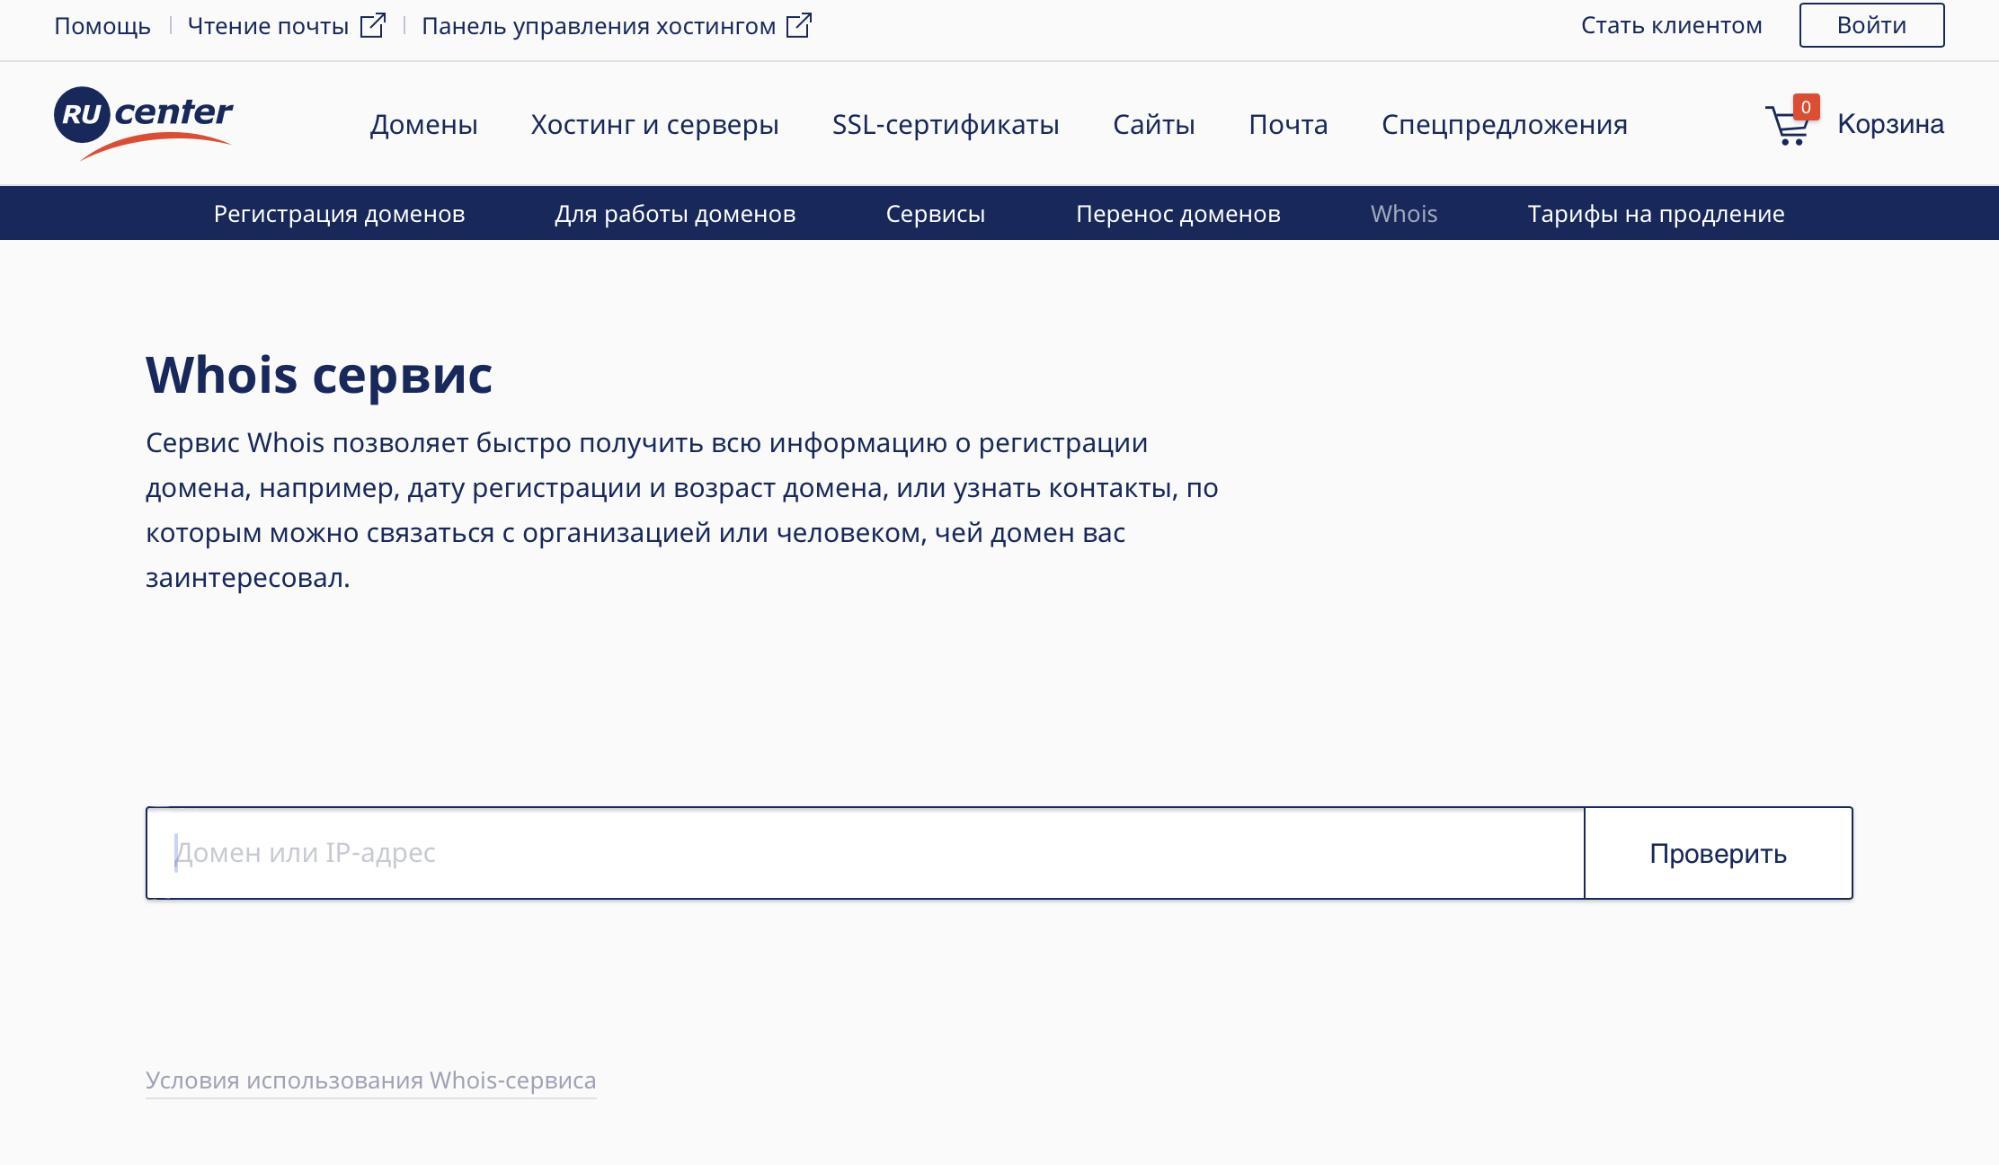 Сервис WHOIS. Nic.ru WHOIS. Nic регистрация домена. Как узнать дату регистрации на твиче. Проверить собственника сайта